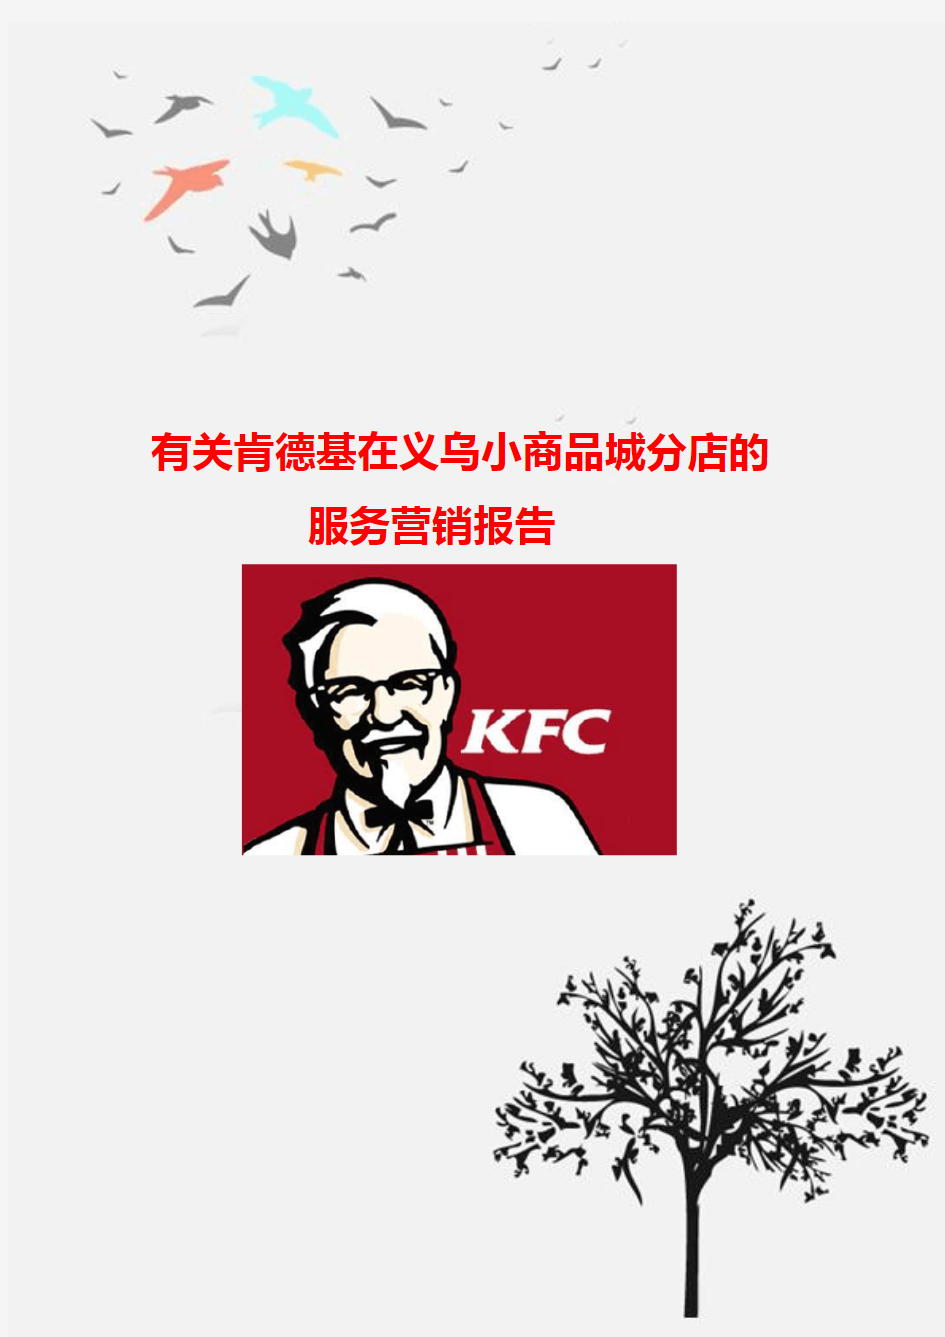 有关KFC服务